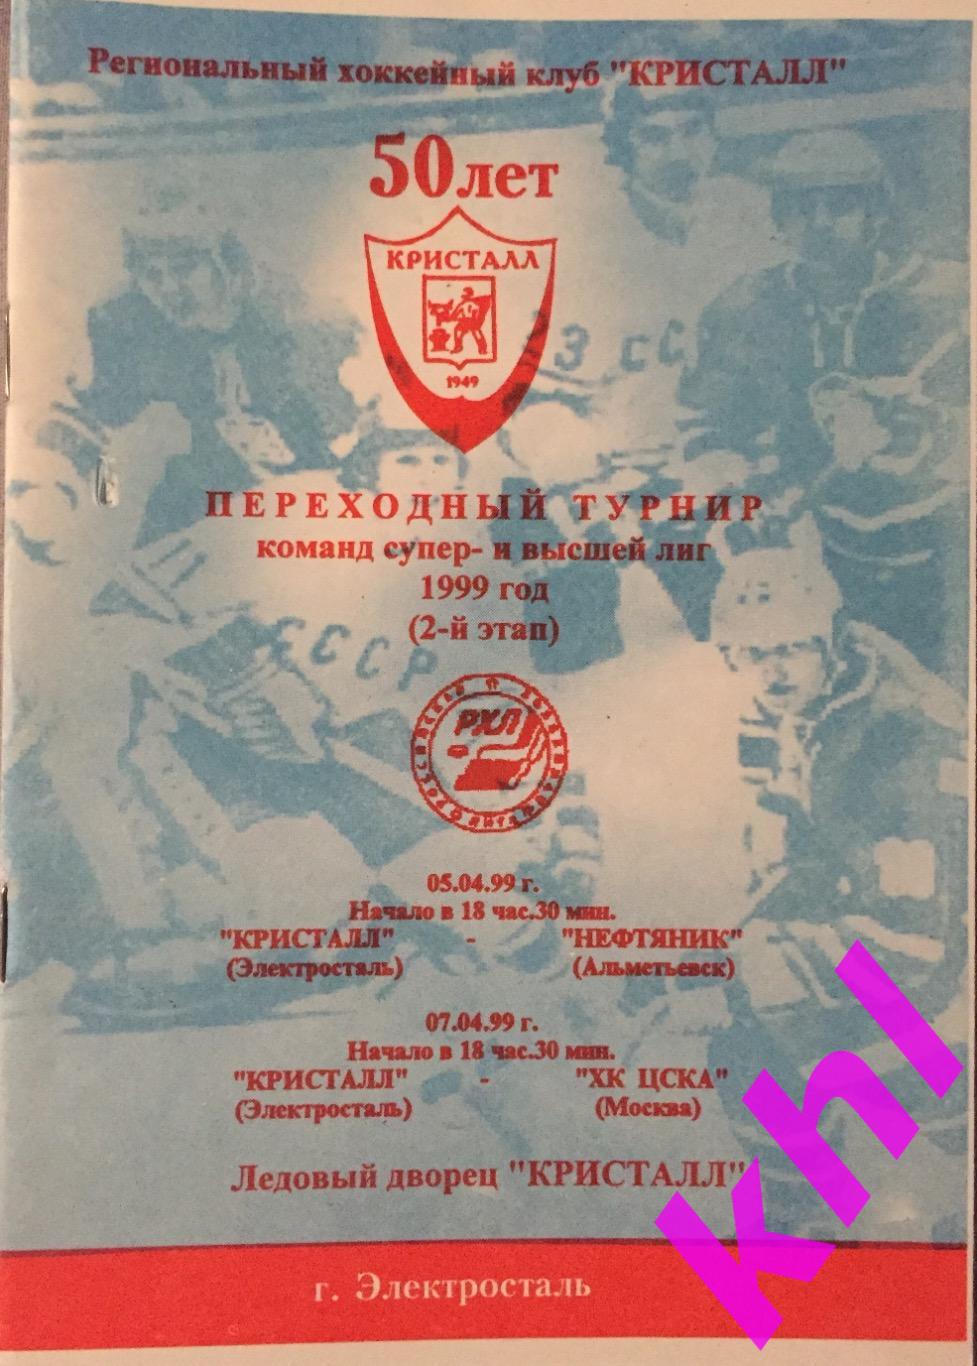 Кристалл Электросталь - Нефтяник Альметьевск / ХК ЦСКА Москва апрель 1999